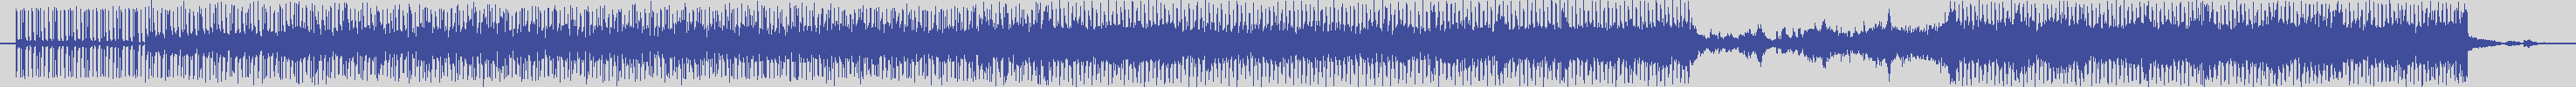 upr [UPR005] Electrosexual - Automatic People [Adan, Ilse Rmx] audio wave form